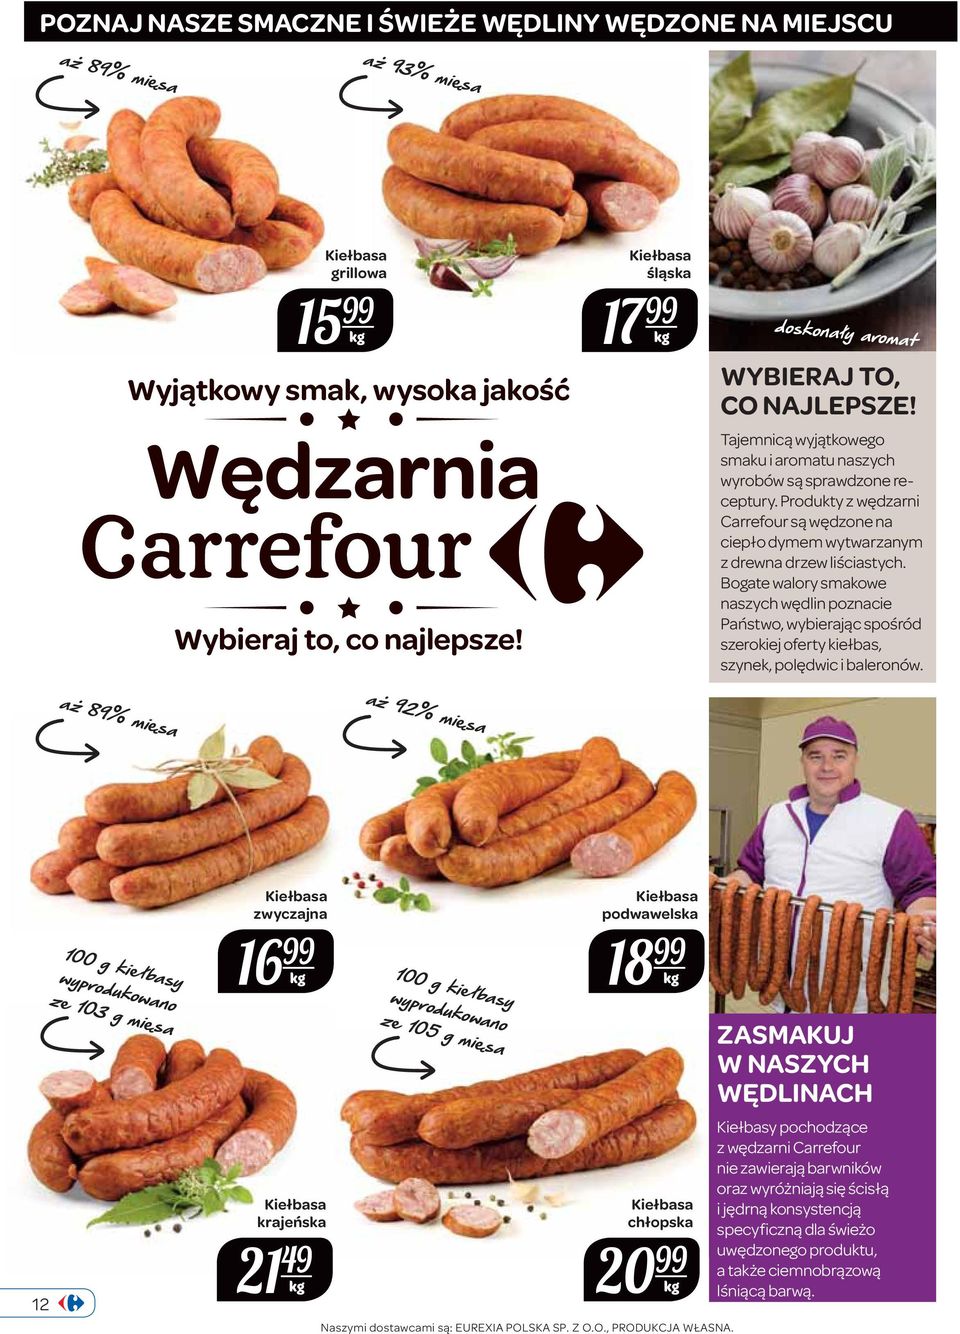 Produkty z wędzarni Carrefour są wędzone na ciepło dymem wytwarzanym z drewna drzew liściastych.